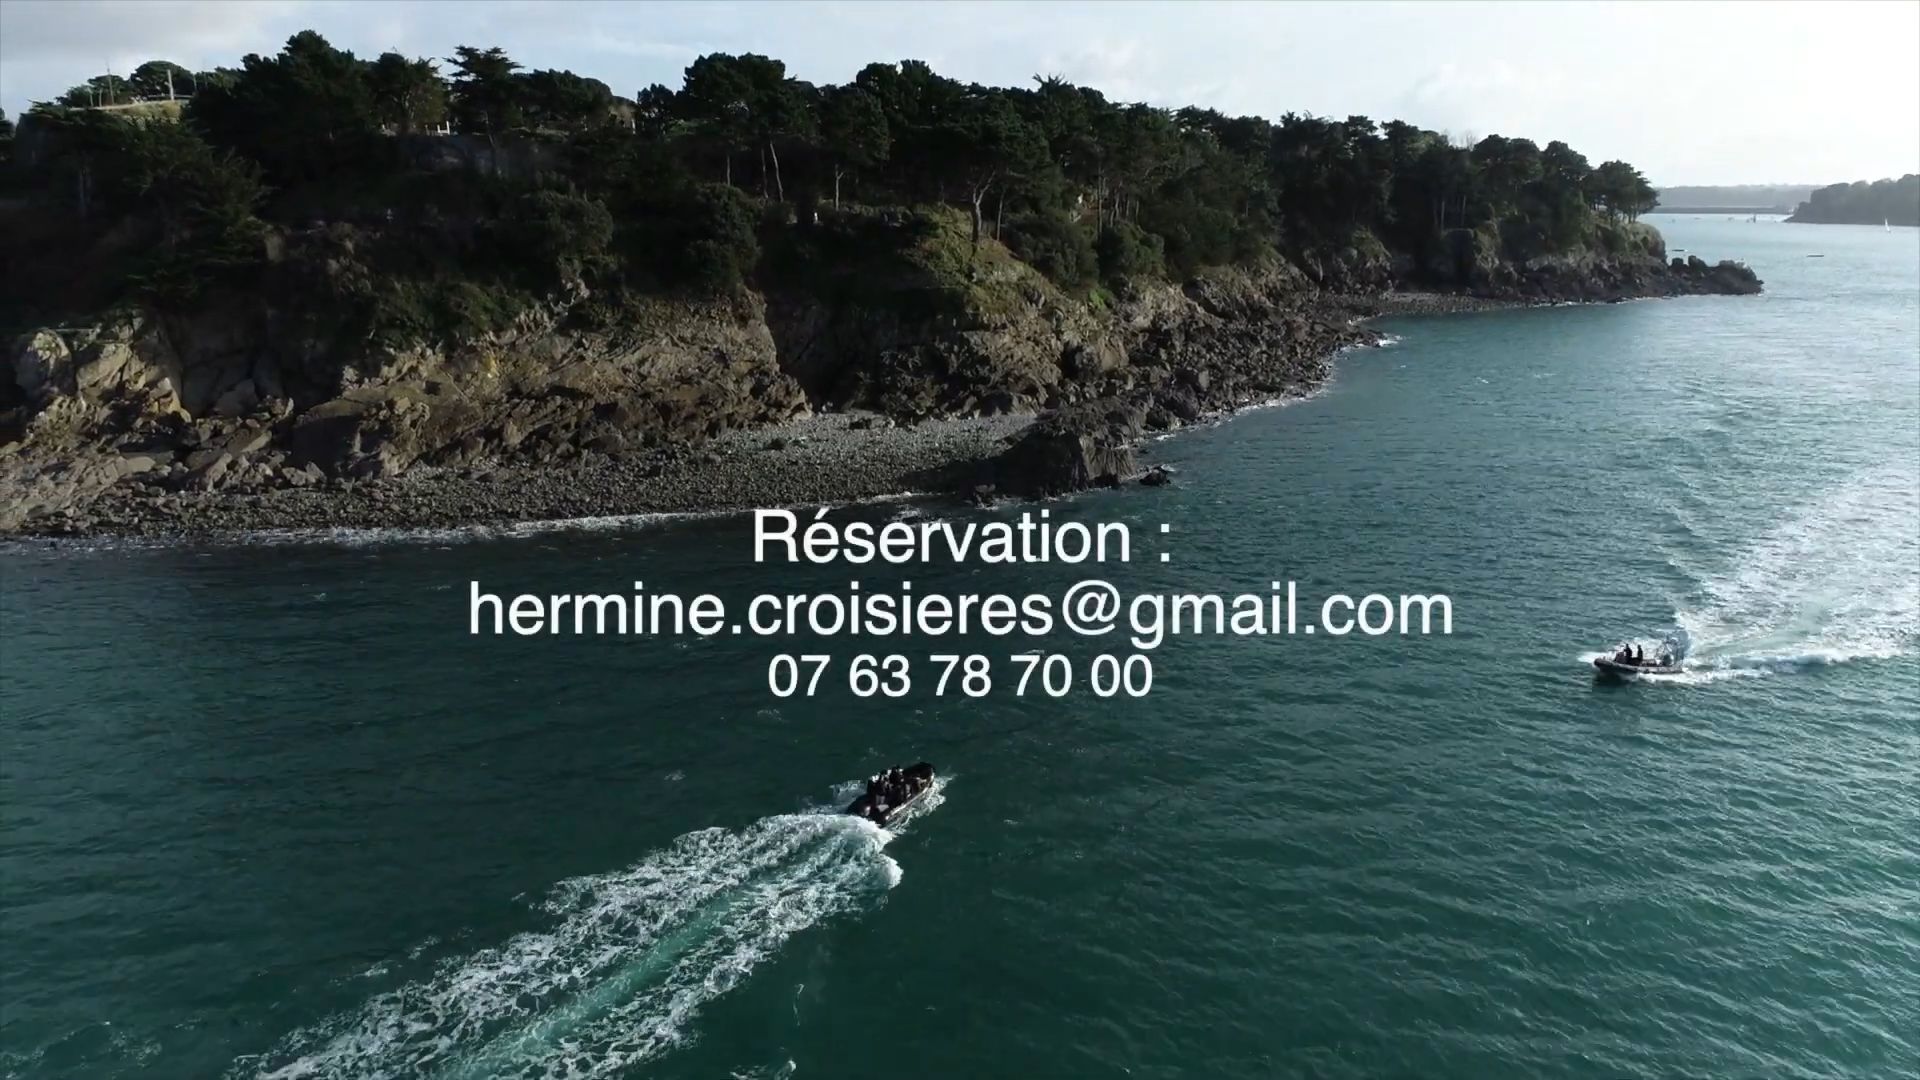 Réservation Hermine Croisières au 07 63 78 70 00